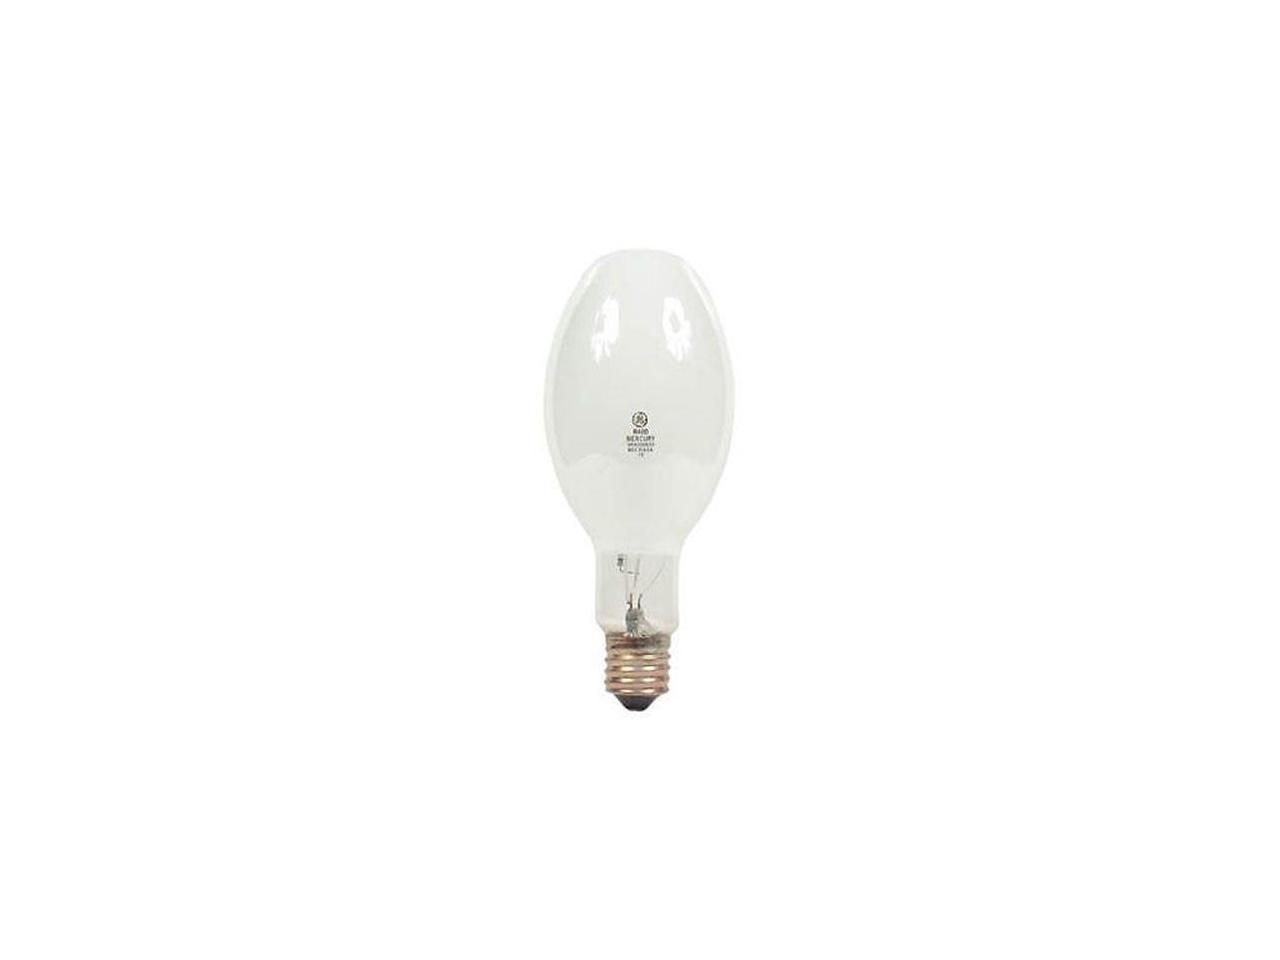 Clear GE Lighting 11779 7-Watt 46-Lumen Specialty C7 Incandescent Light Bulb 